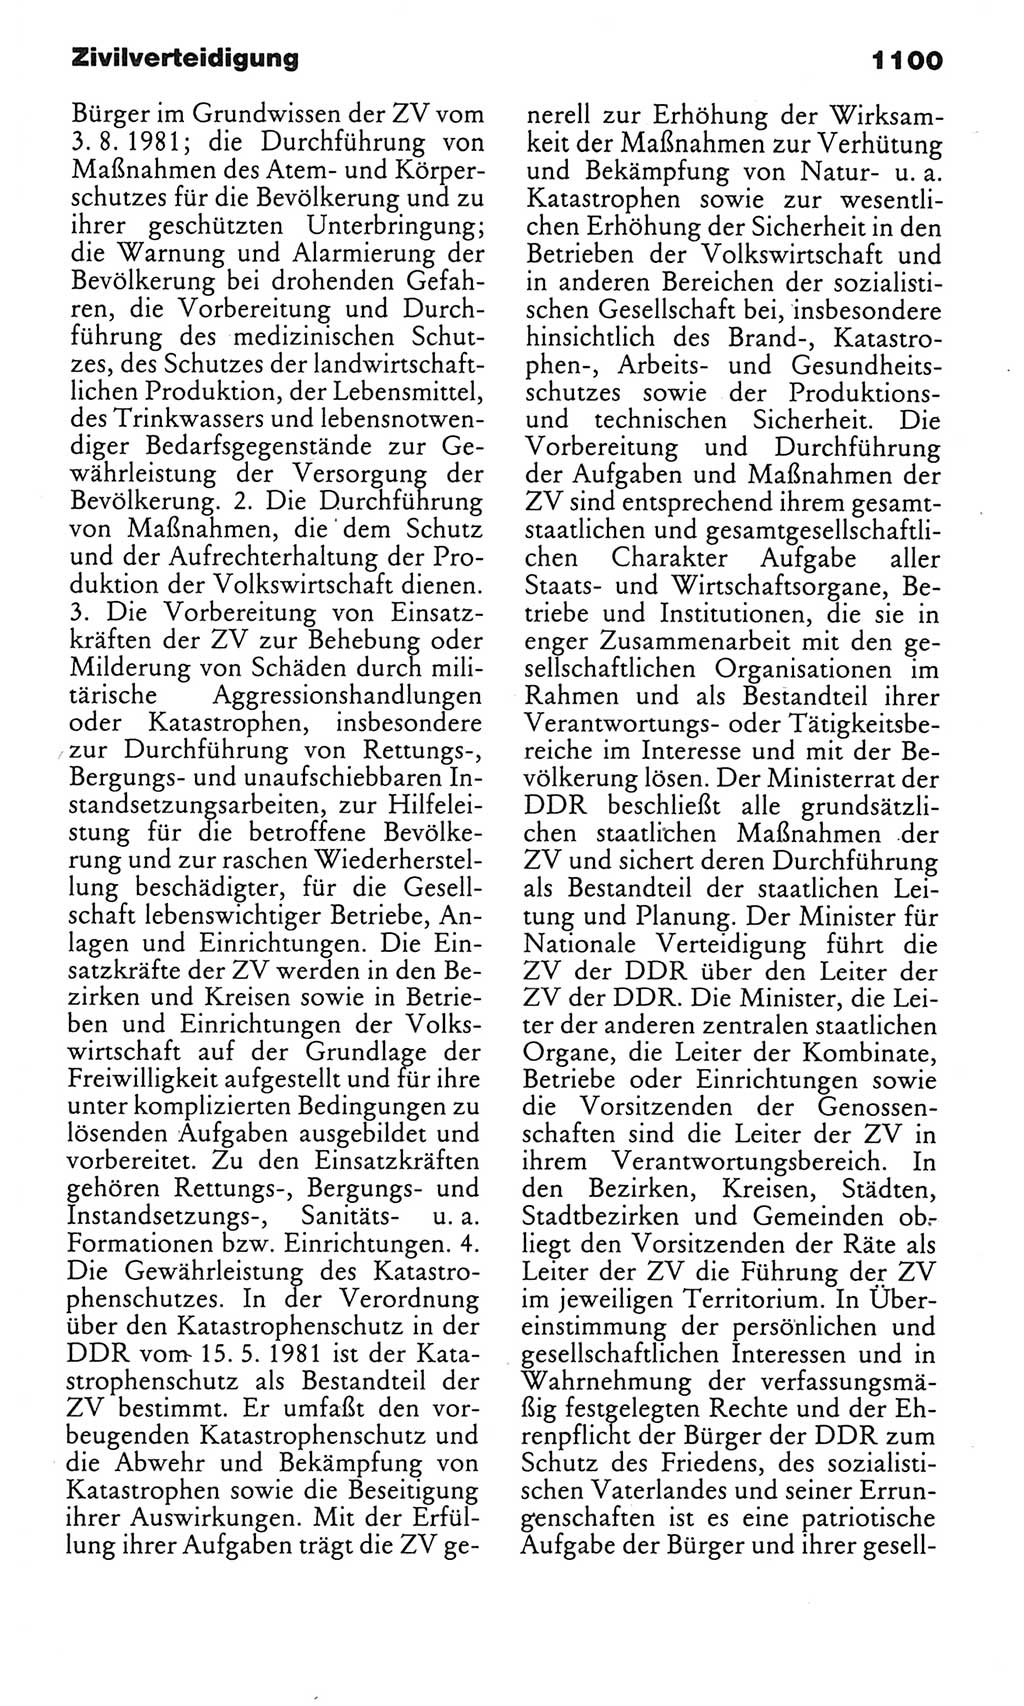 Kleines politisches Wörterbuch [Deutsche Demokratische Republik (DDR)] 1985, Seite 1100 (Kl. pol. Wb. DDR 1985, S. 1100)